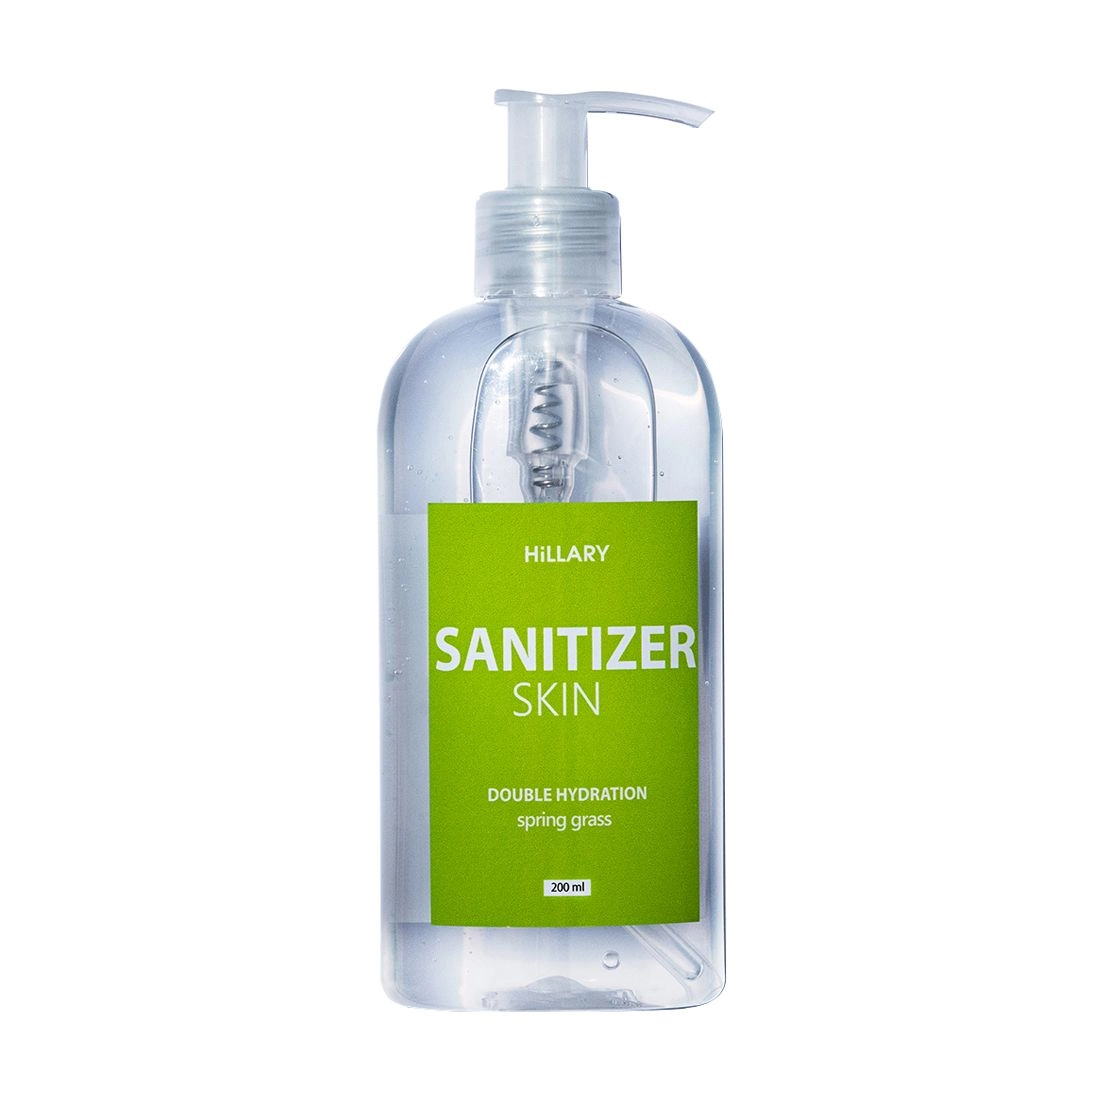 Hillary Антисептик-санитайзер для рук Skin Sanitizer Double Hydration Spring Grass, 200 мл - фото N1